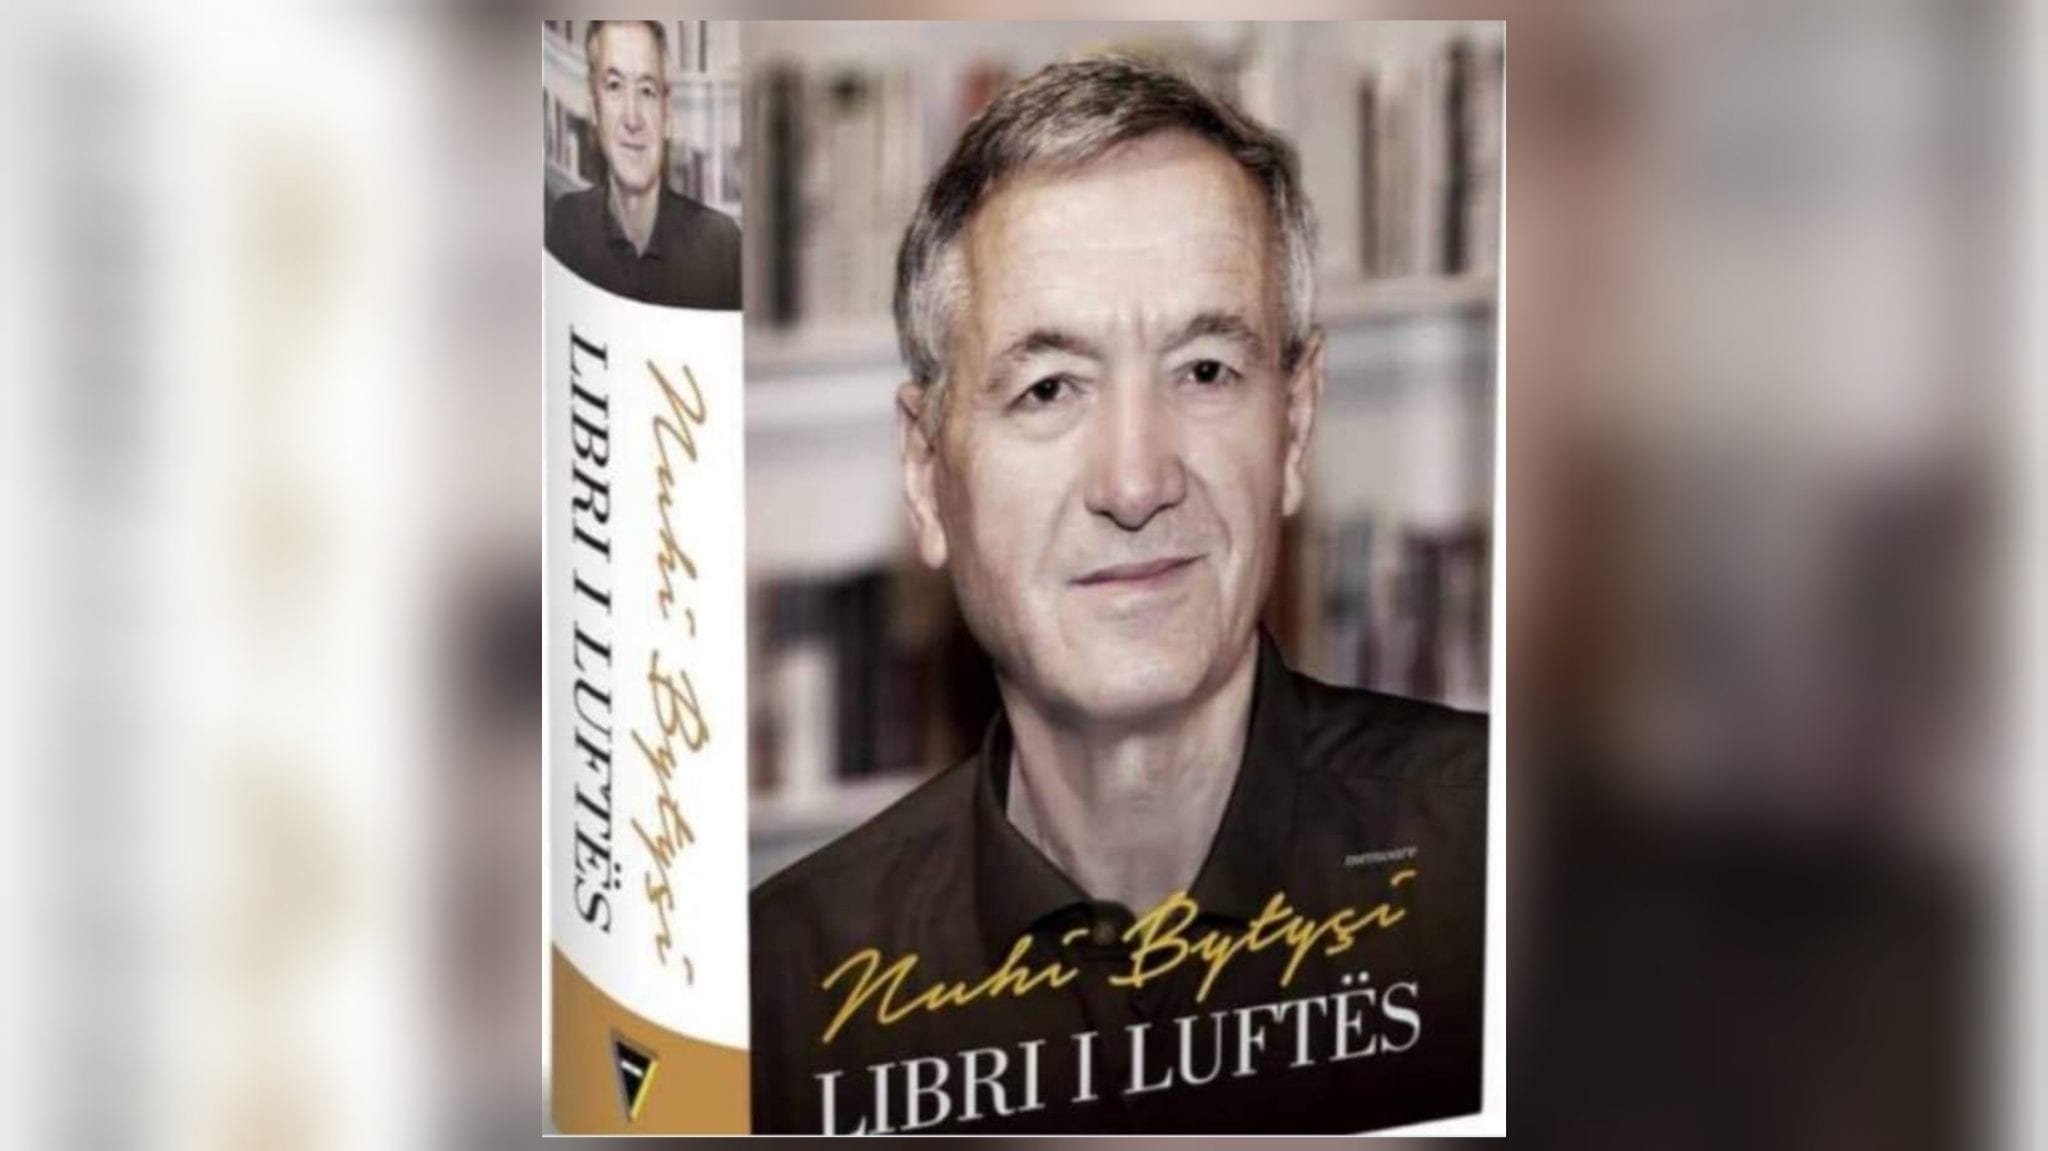 Promovohet “Libri i Luftës” para bashkatdhetarëve në Vjenë të Austrisë